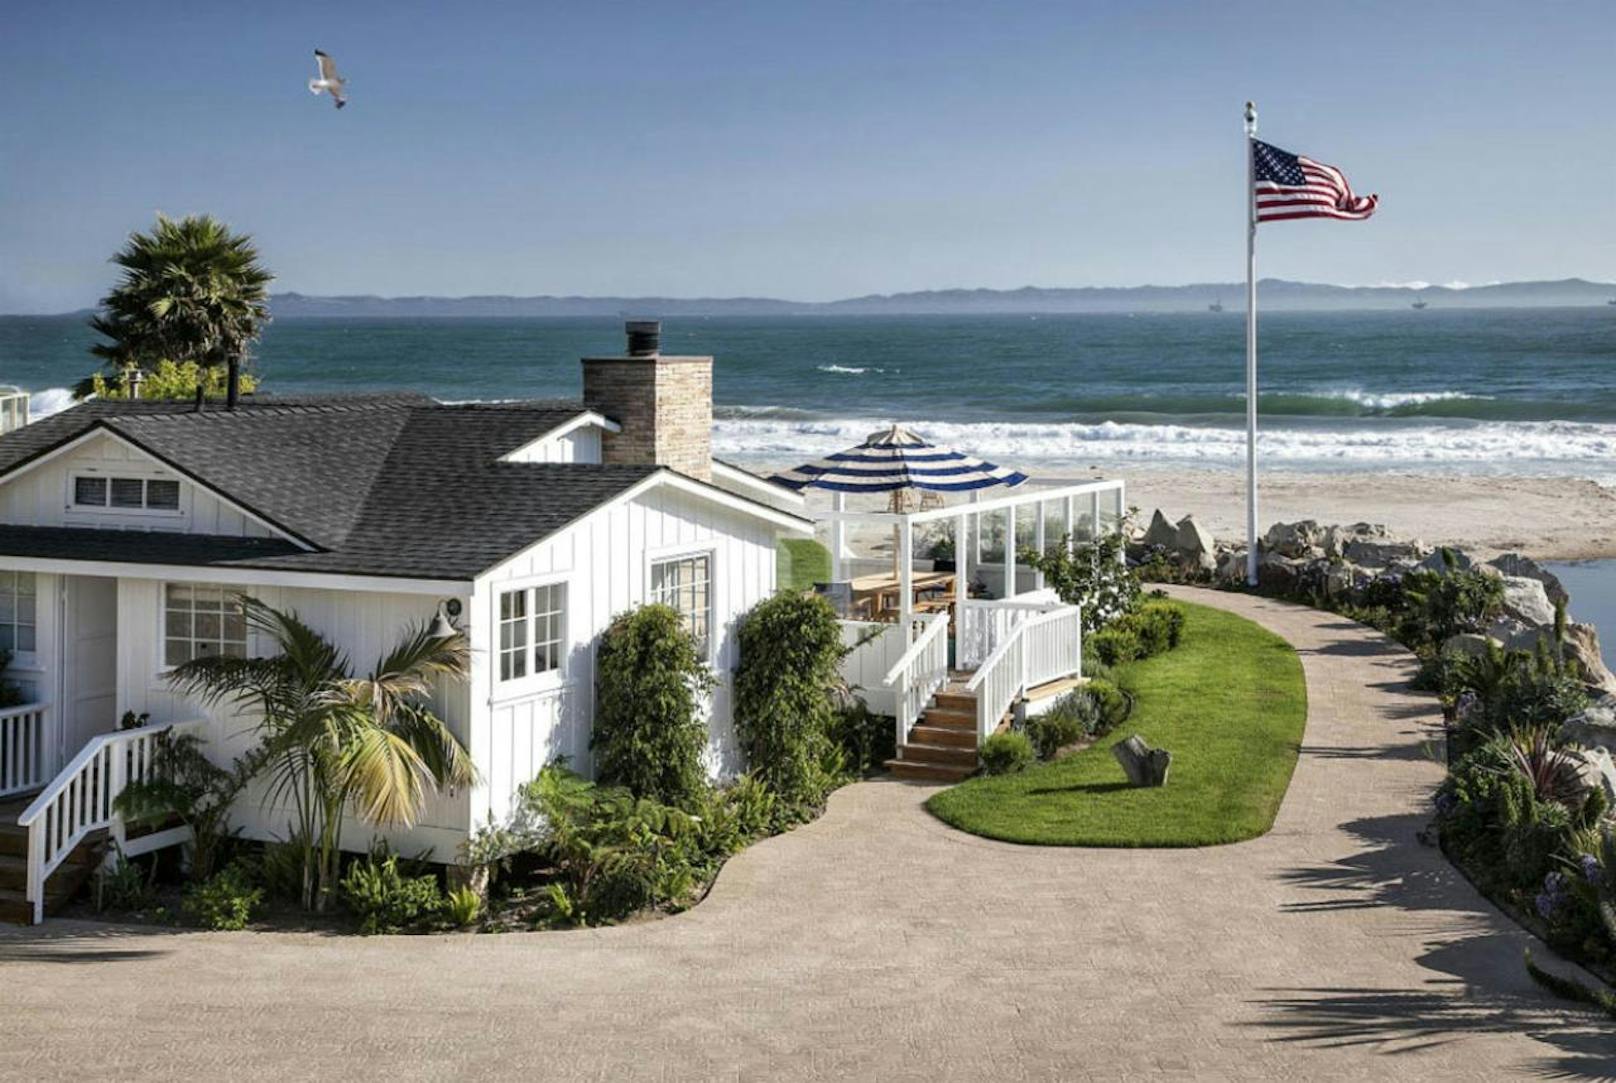 10 Millionen US-Dollar hat das Promi-Pärchen für das Strandhaus in Santa Barbara hingelegt